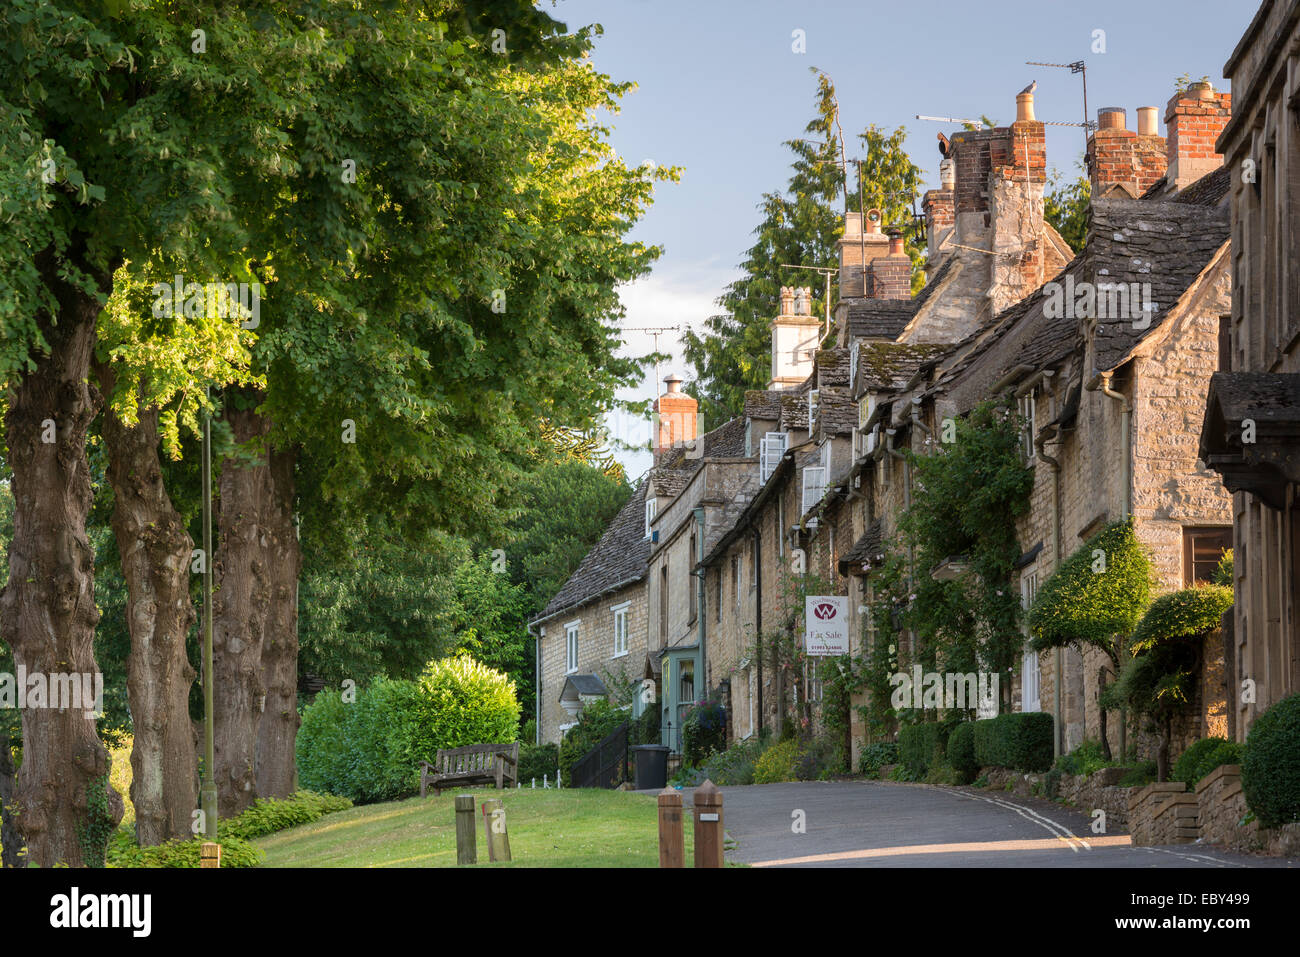 Jolis cottages le long de la colline dans les Cotswolds ville de Burford, Oxfordshire, Angleterre. L'été (juillet) 2014. Banque D'Images